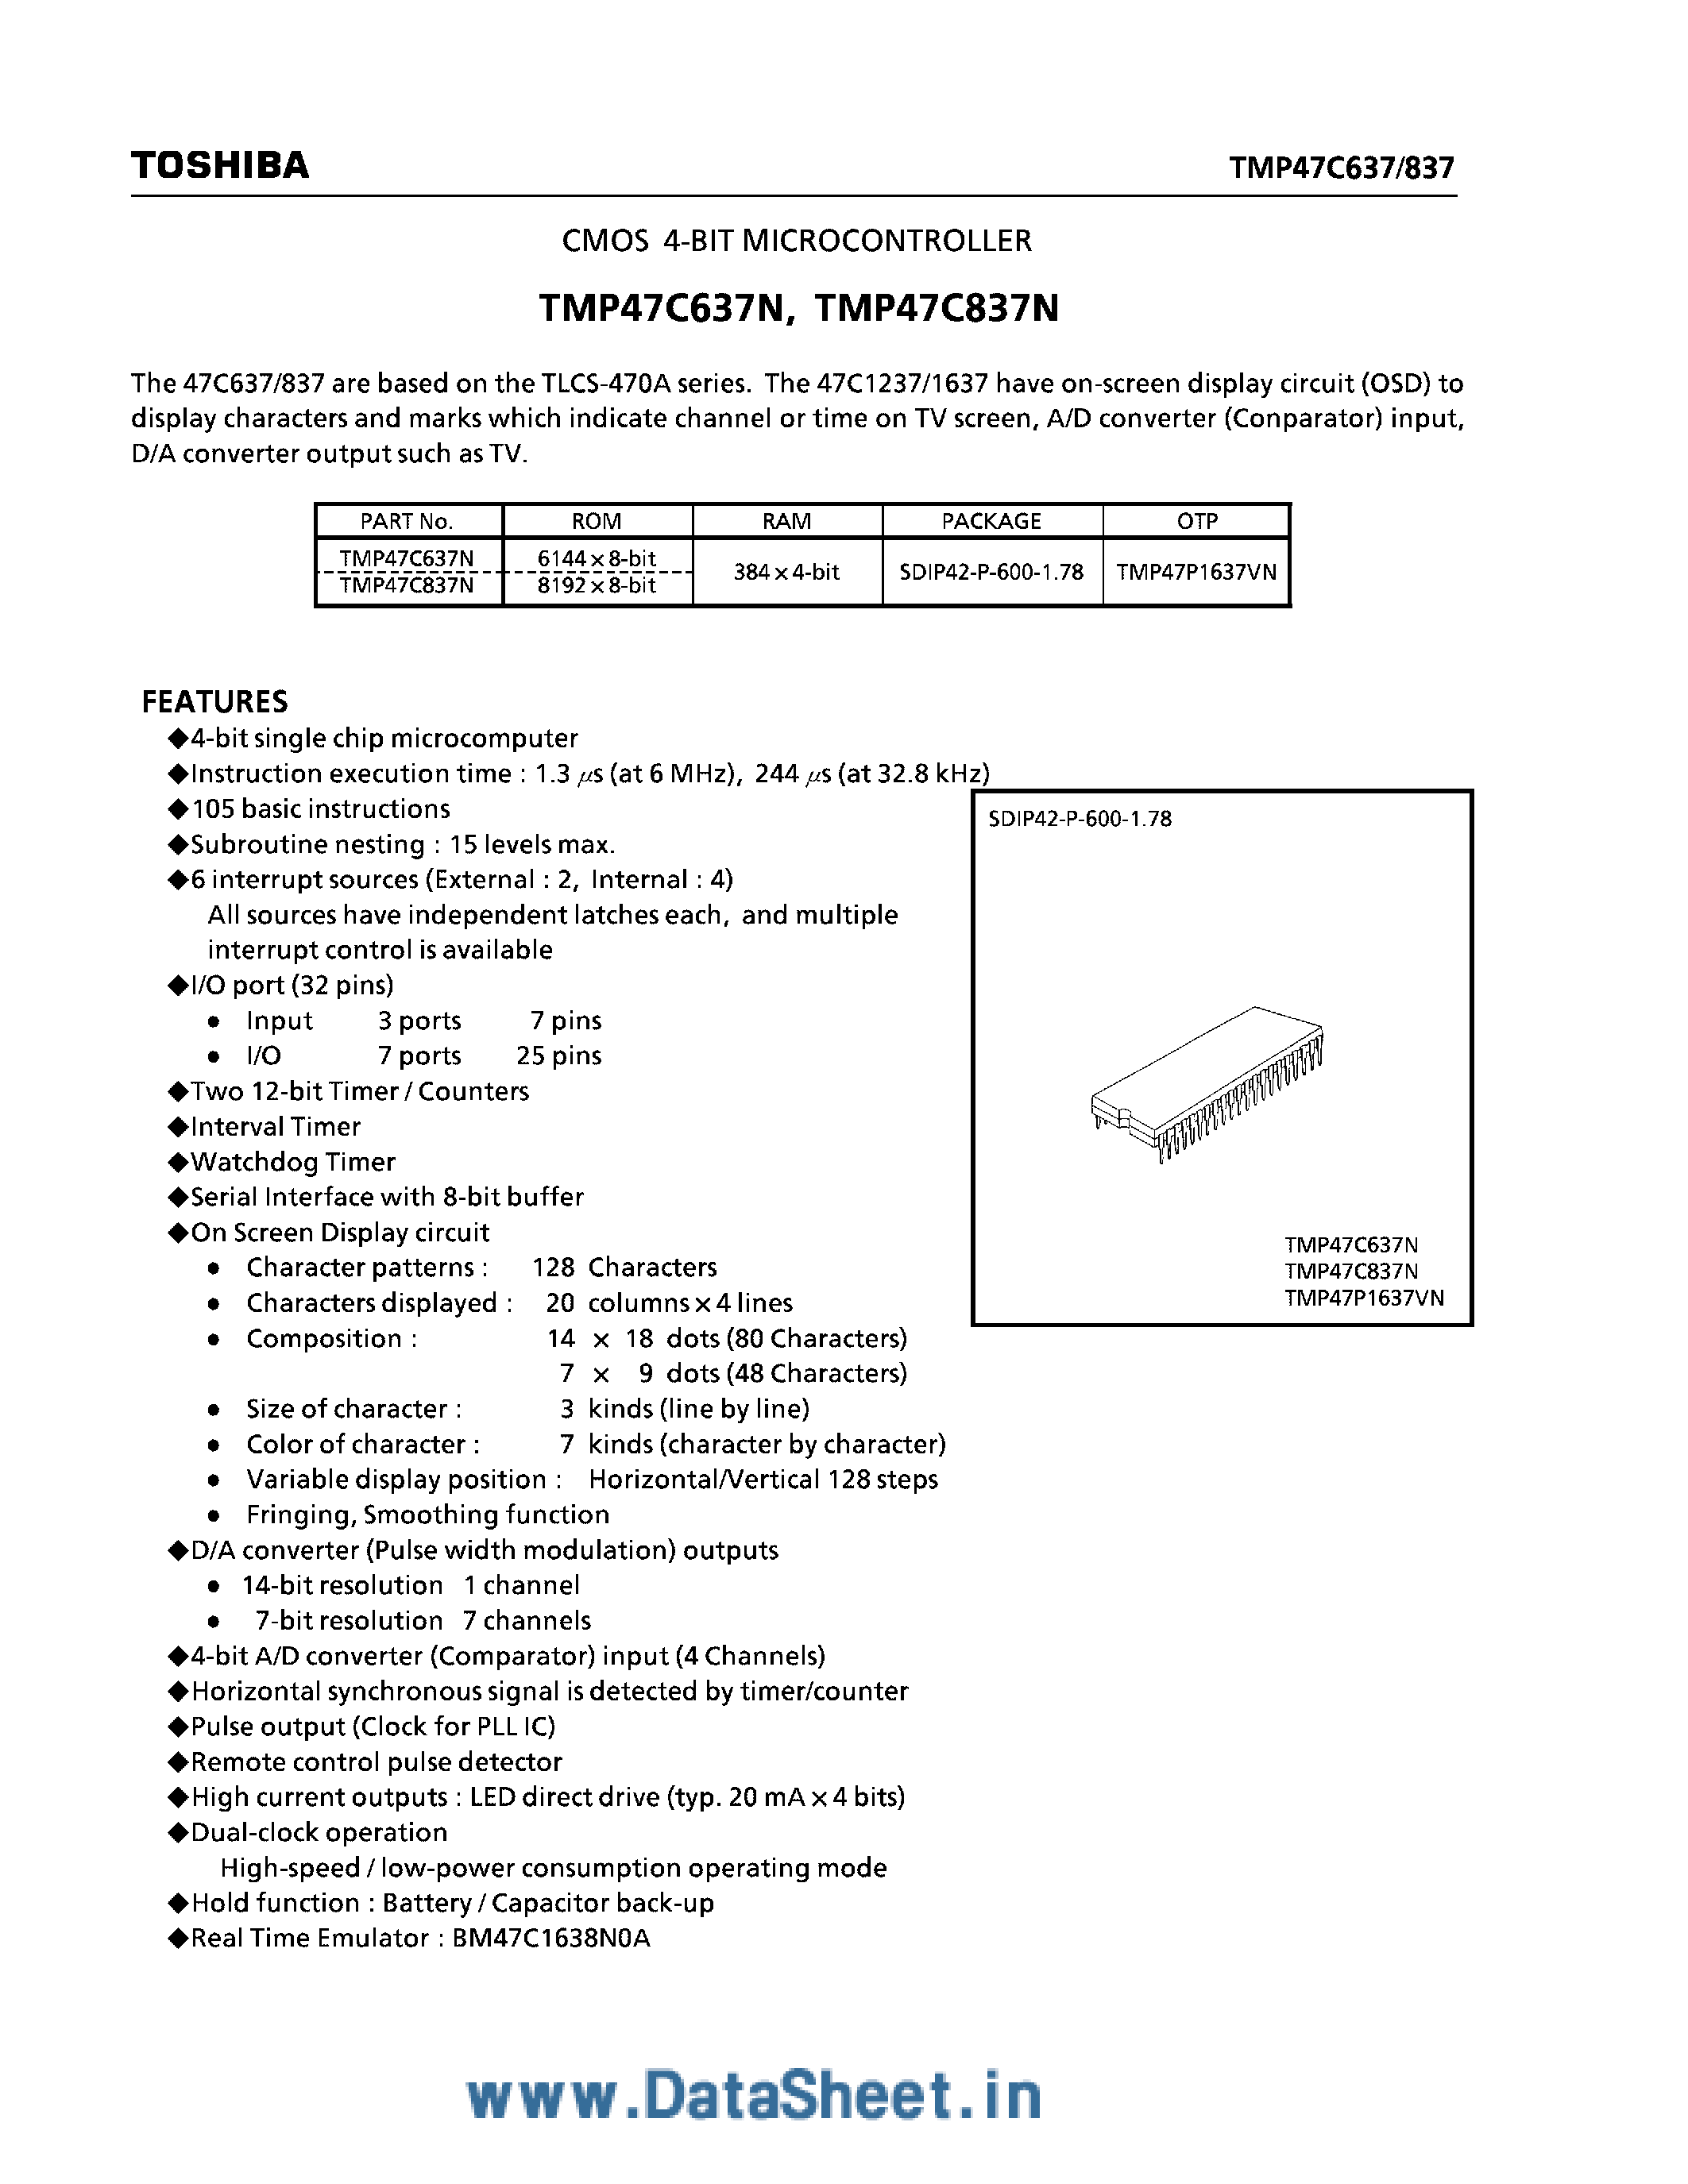 Даташит TMP47C637N - (TMP47C637N / TMP47C837N) CMOS 4-Bit Microcontroller страница 1